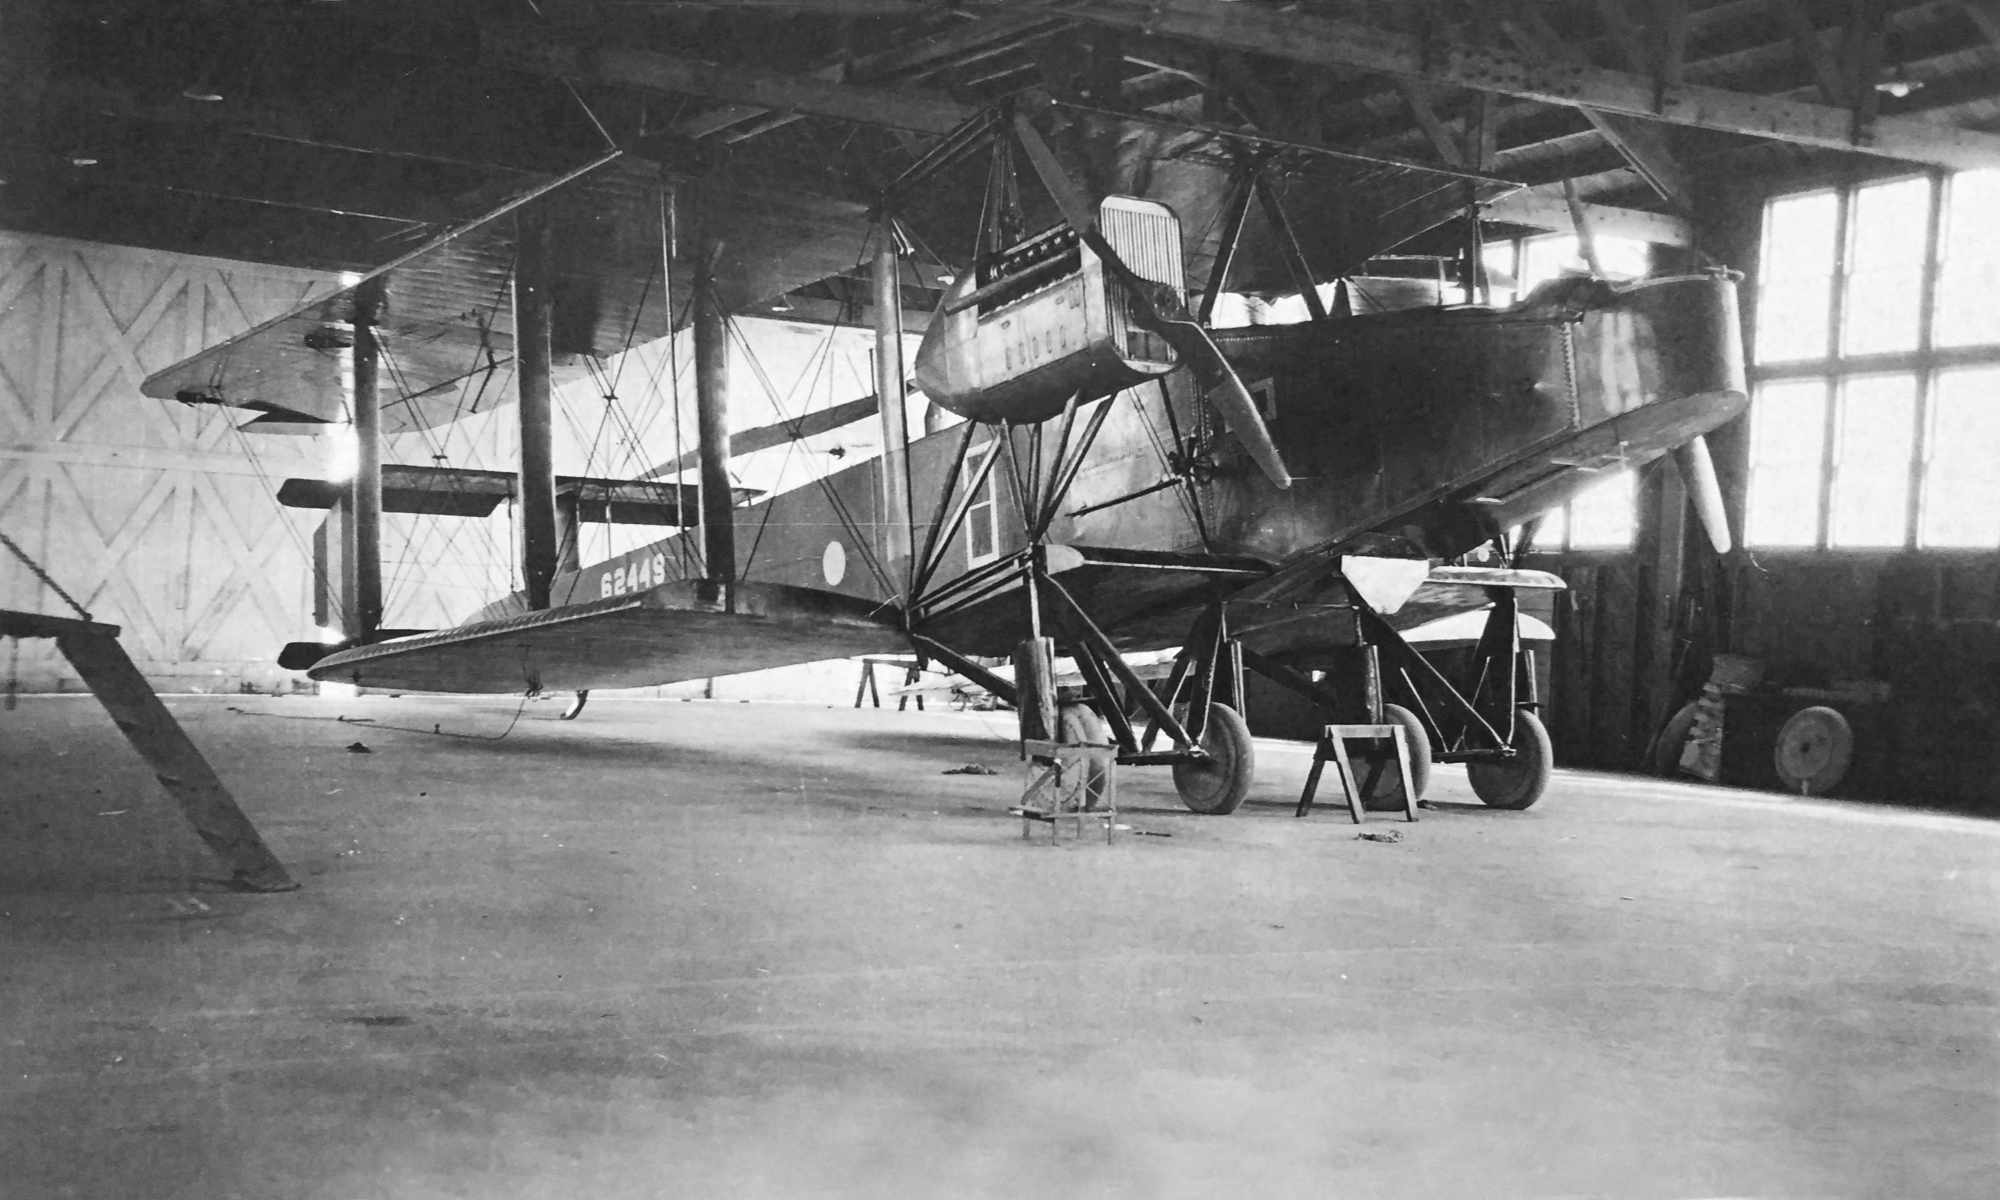 Handley Page Aircraft